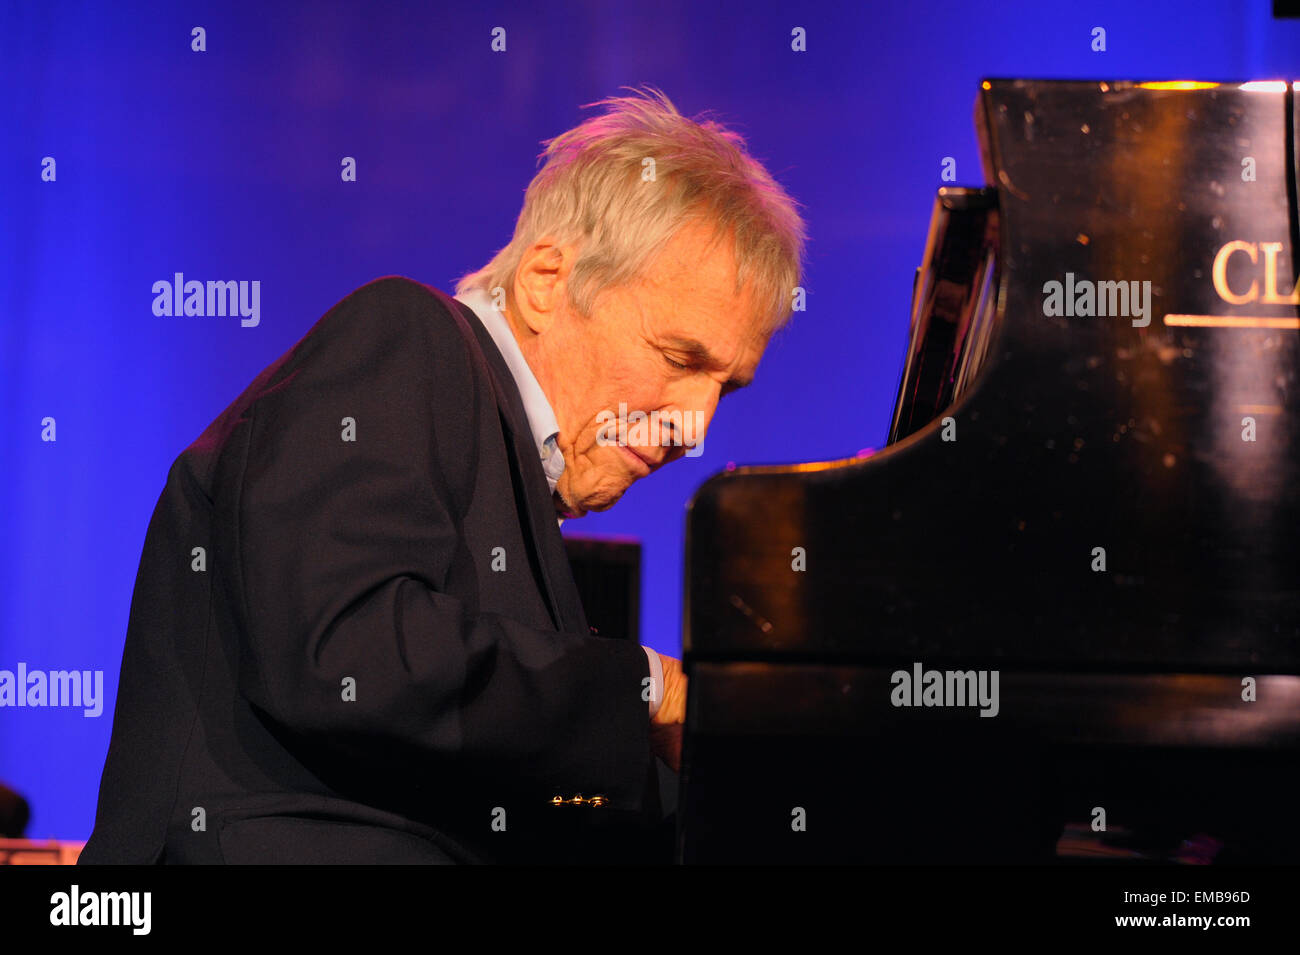 Autor, compositor, cantante y pianista Burt Bacharach en concierto en el piano. Foto de stock